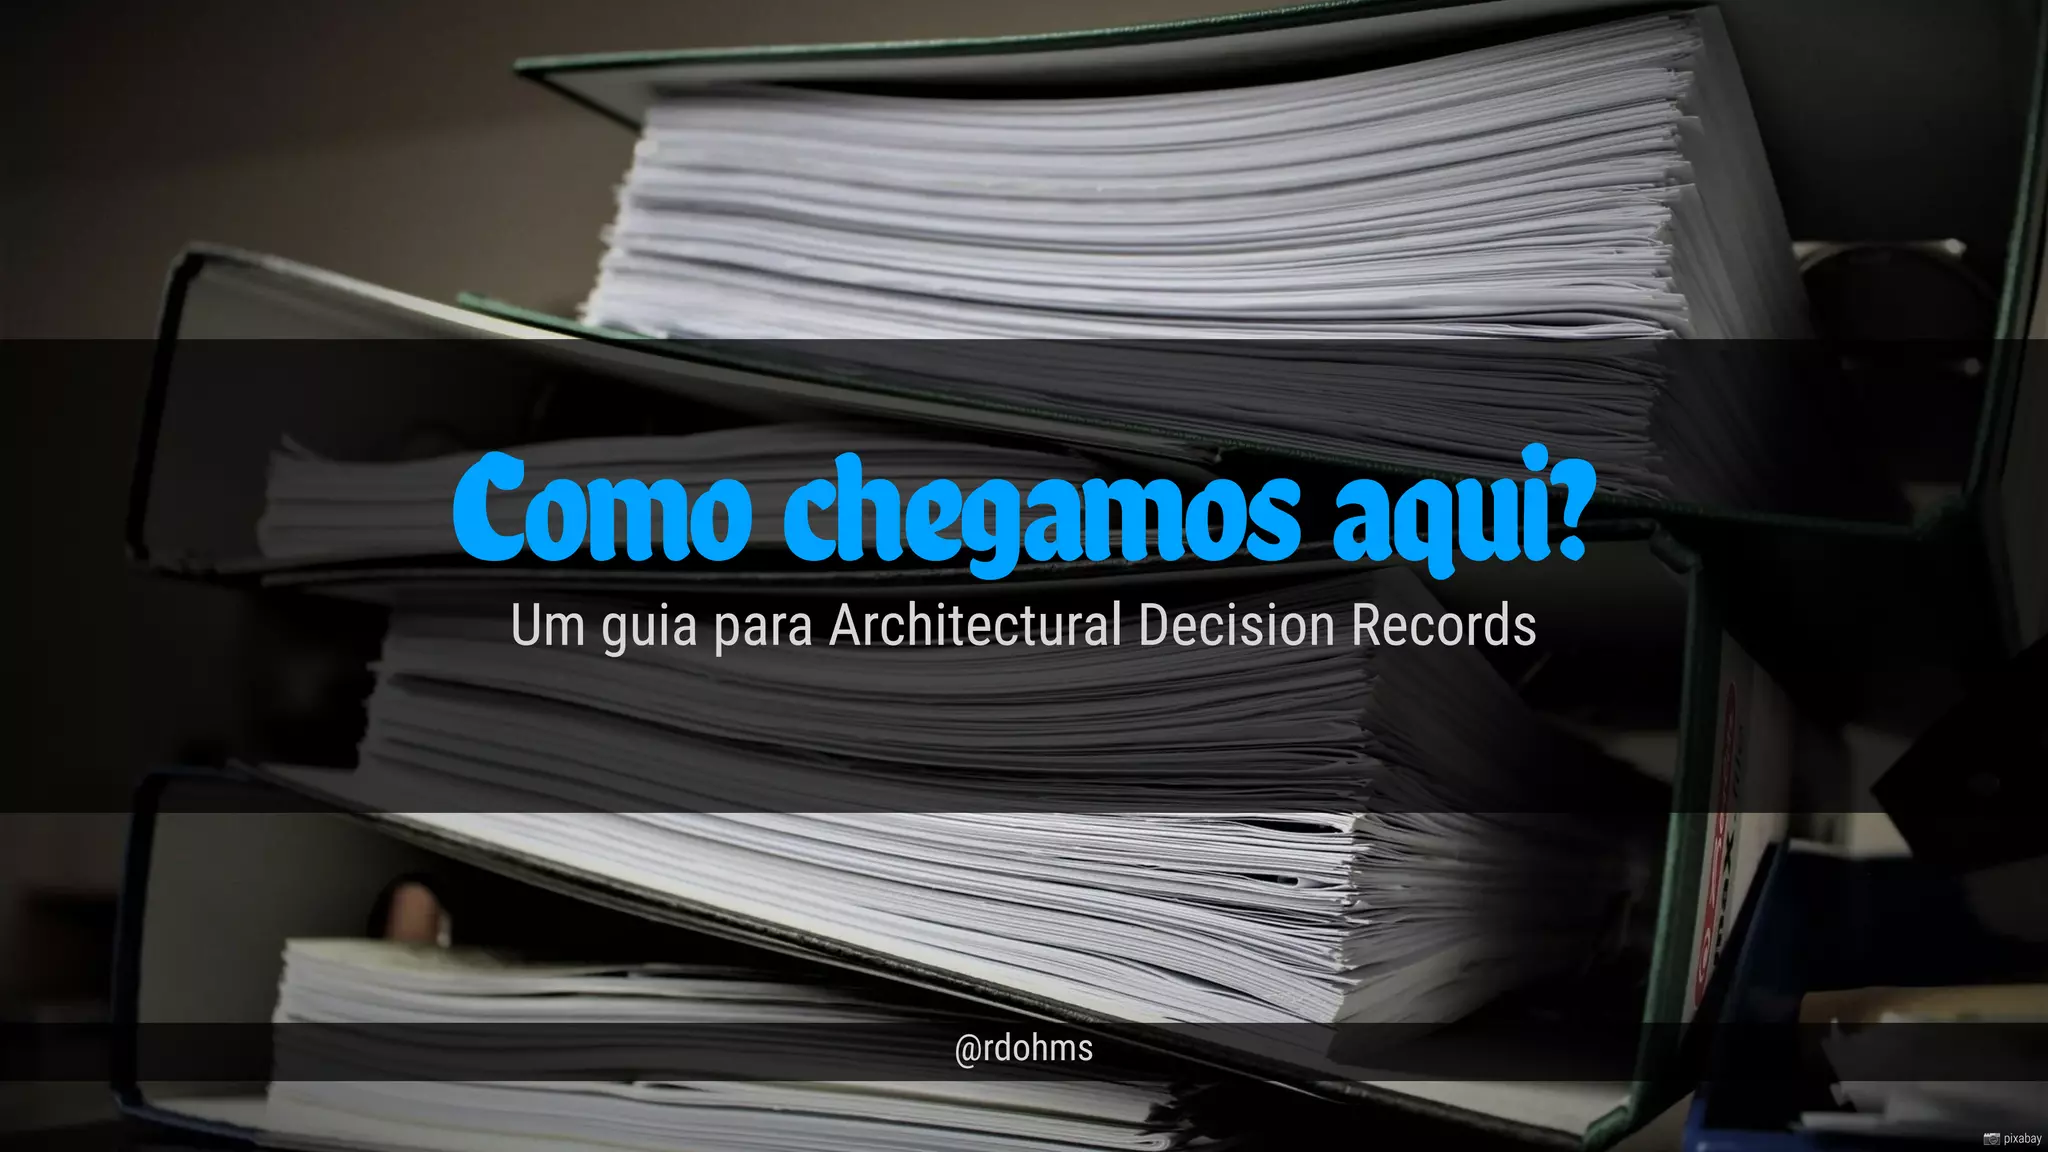 Architectural Decision Records